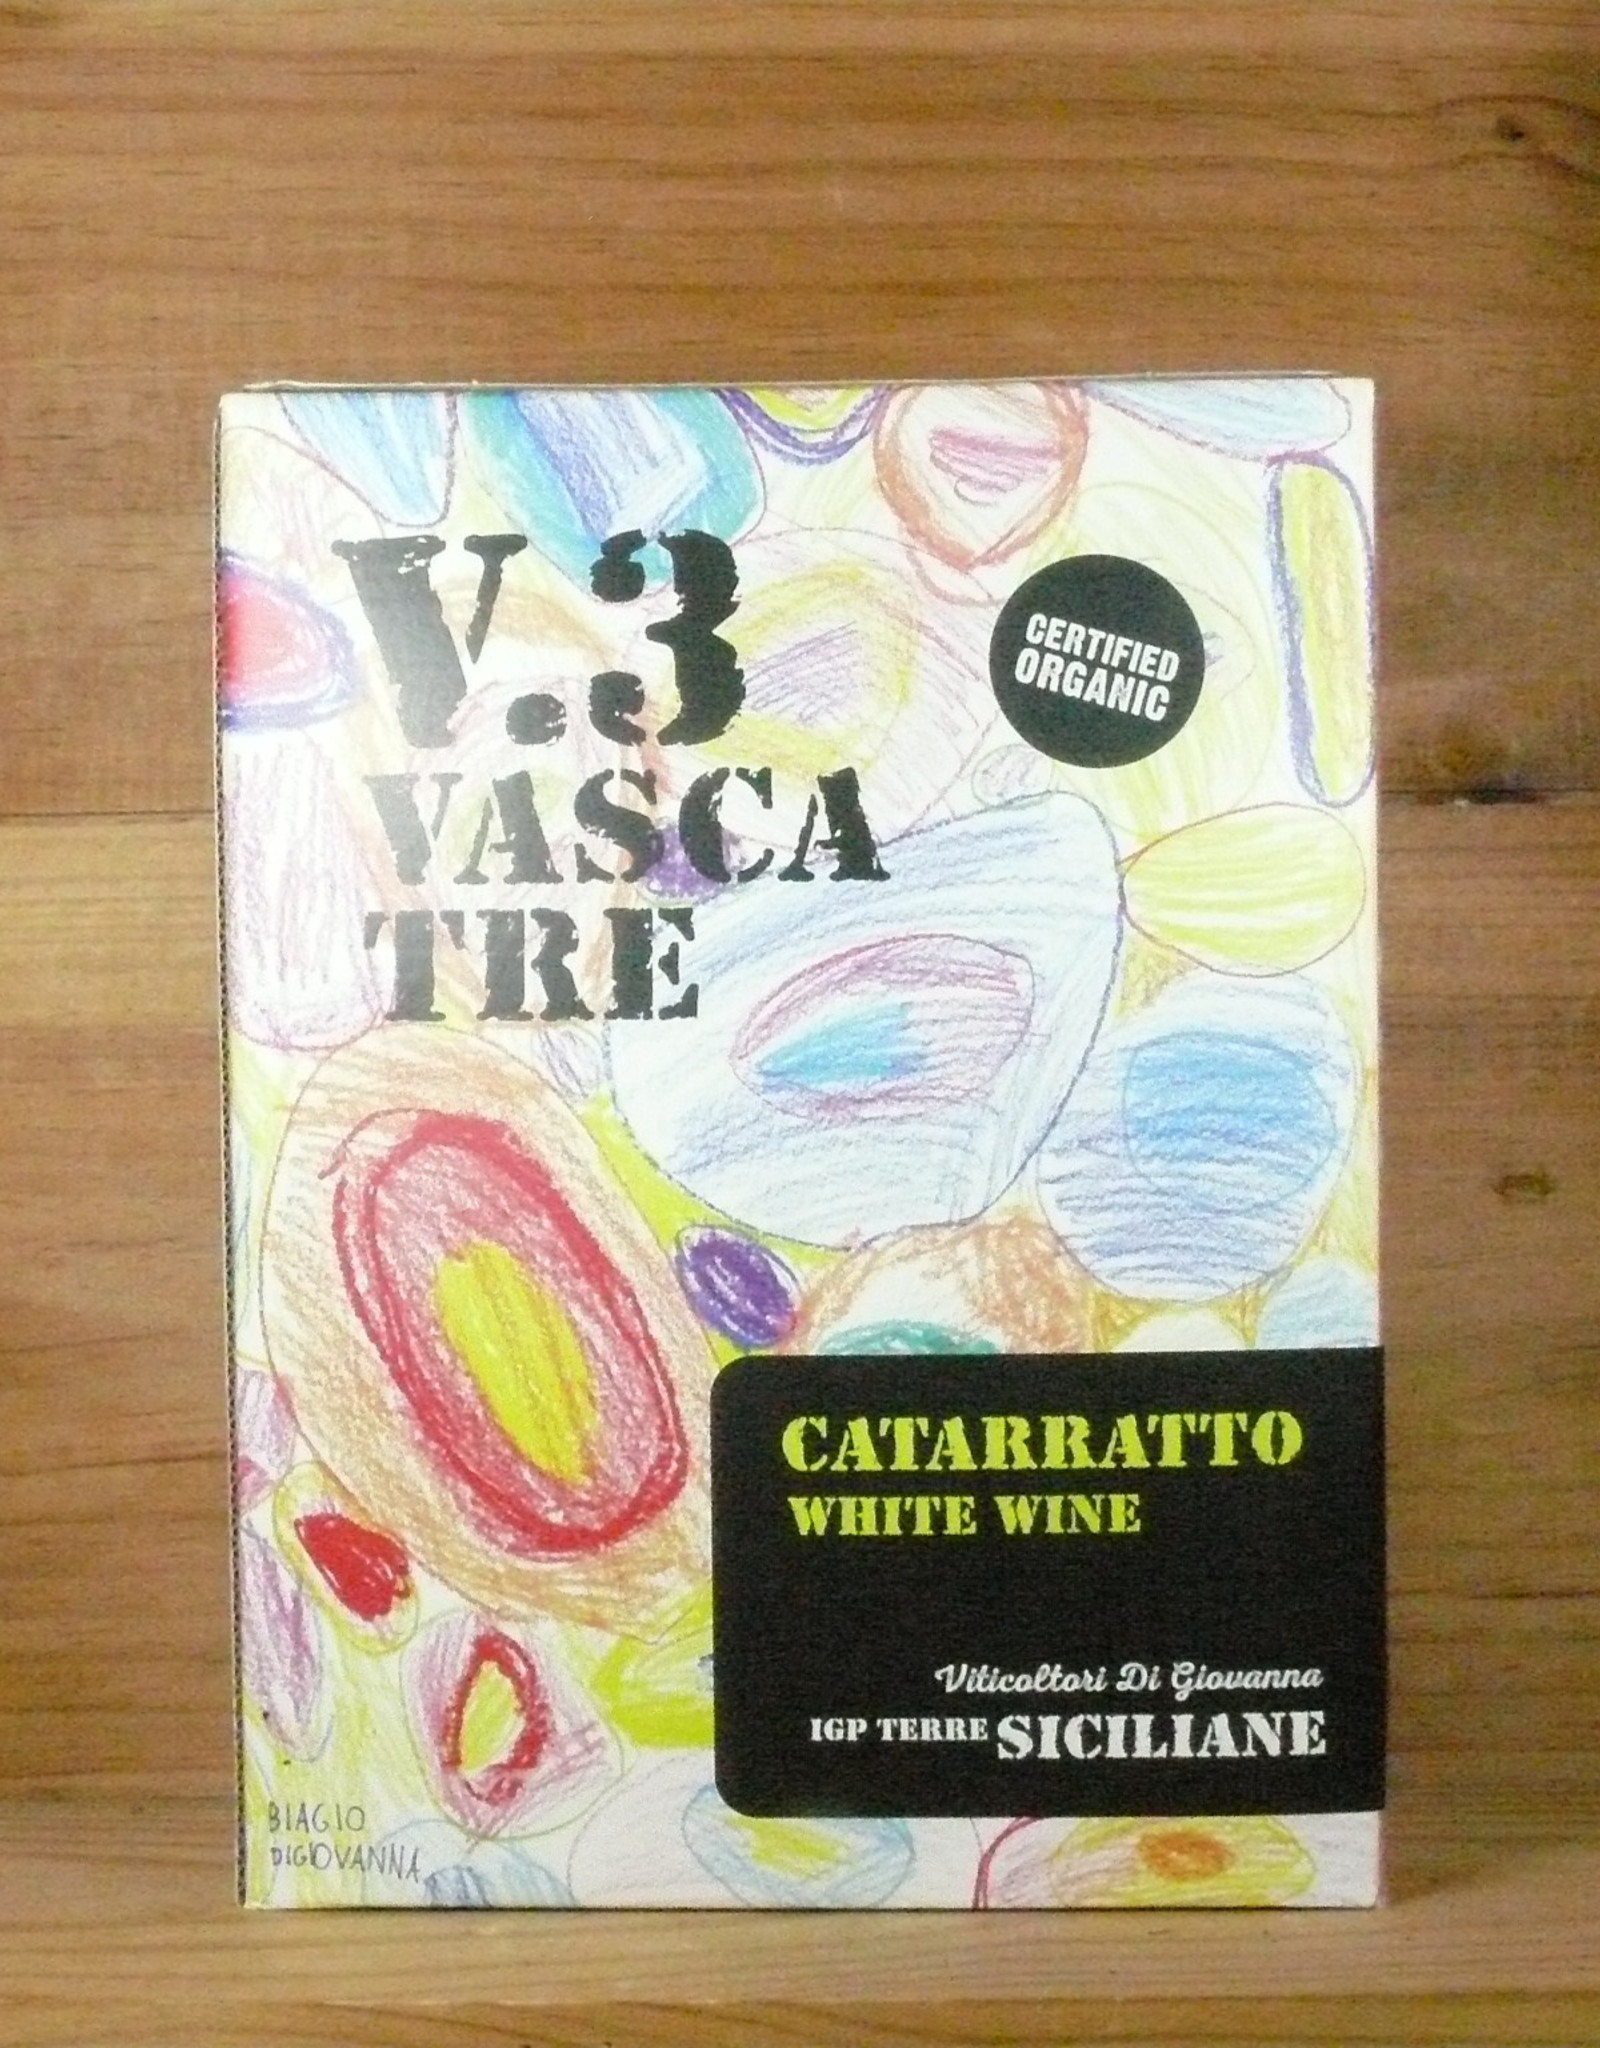 Di Giovanna "V.3 Vasca Tre" Cataratto 2020 - 3L Box